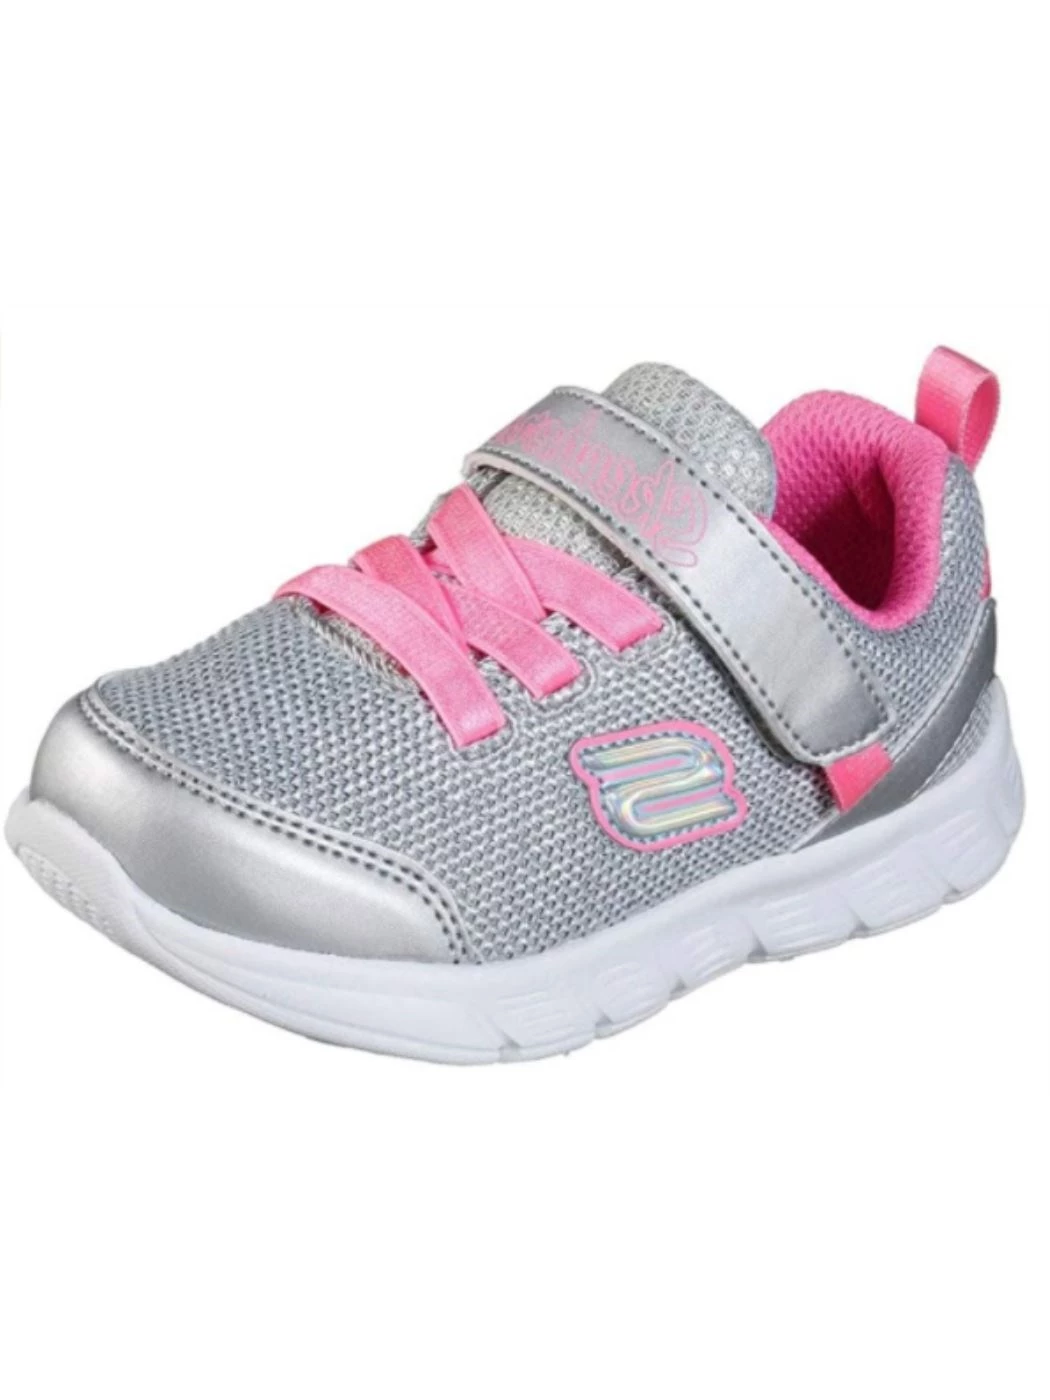 Skechers Girls Sneaker, Silver/Hot Pink